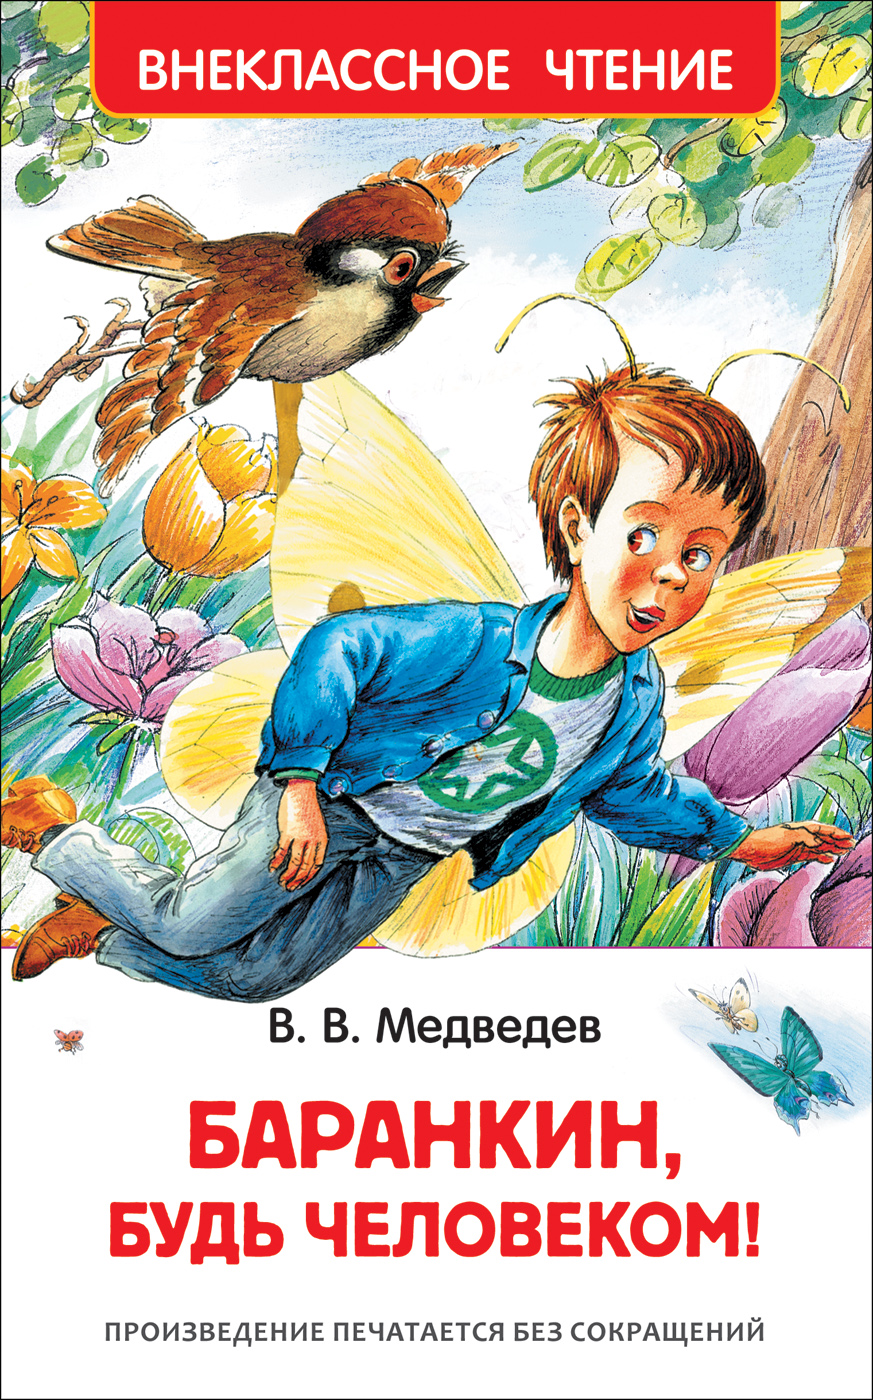 Книга 29897 "Баранкин, будь человекмо" ВЧ  Росмэн - Уральск 